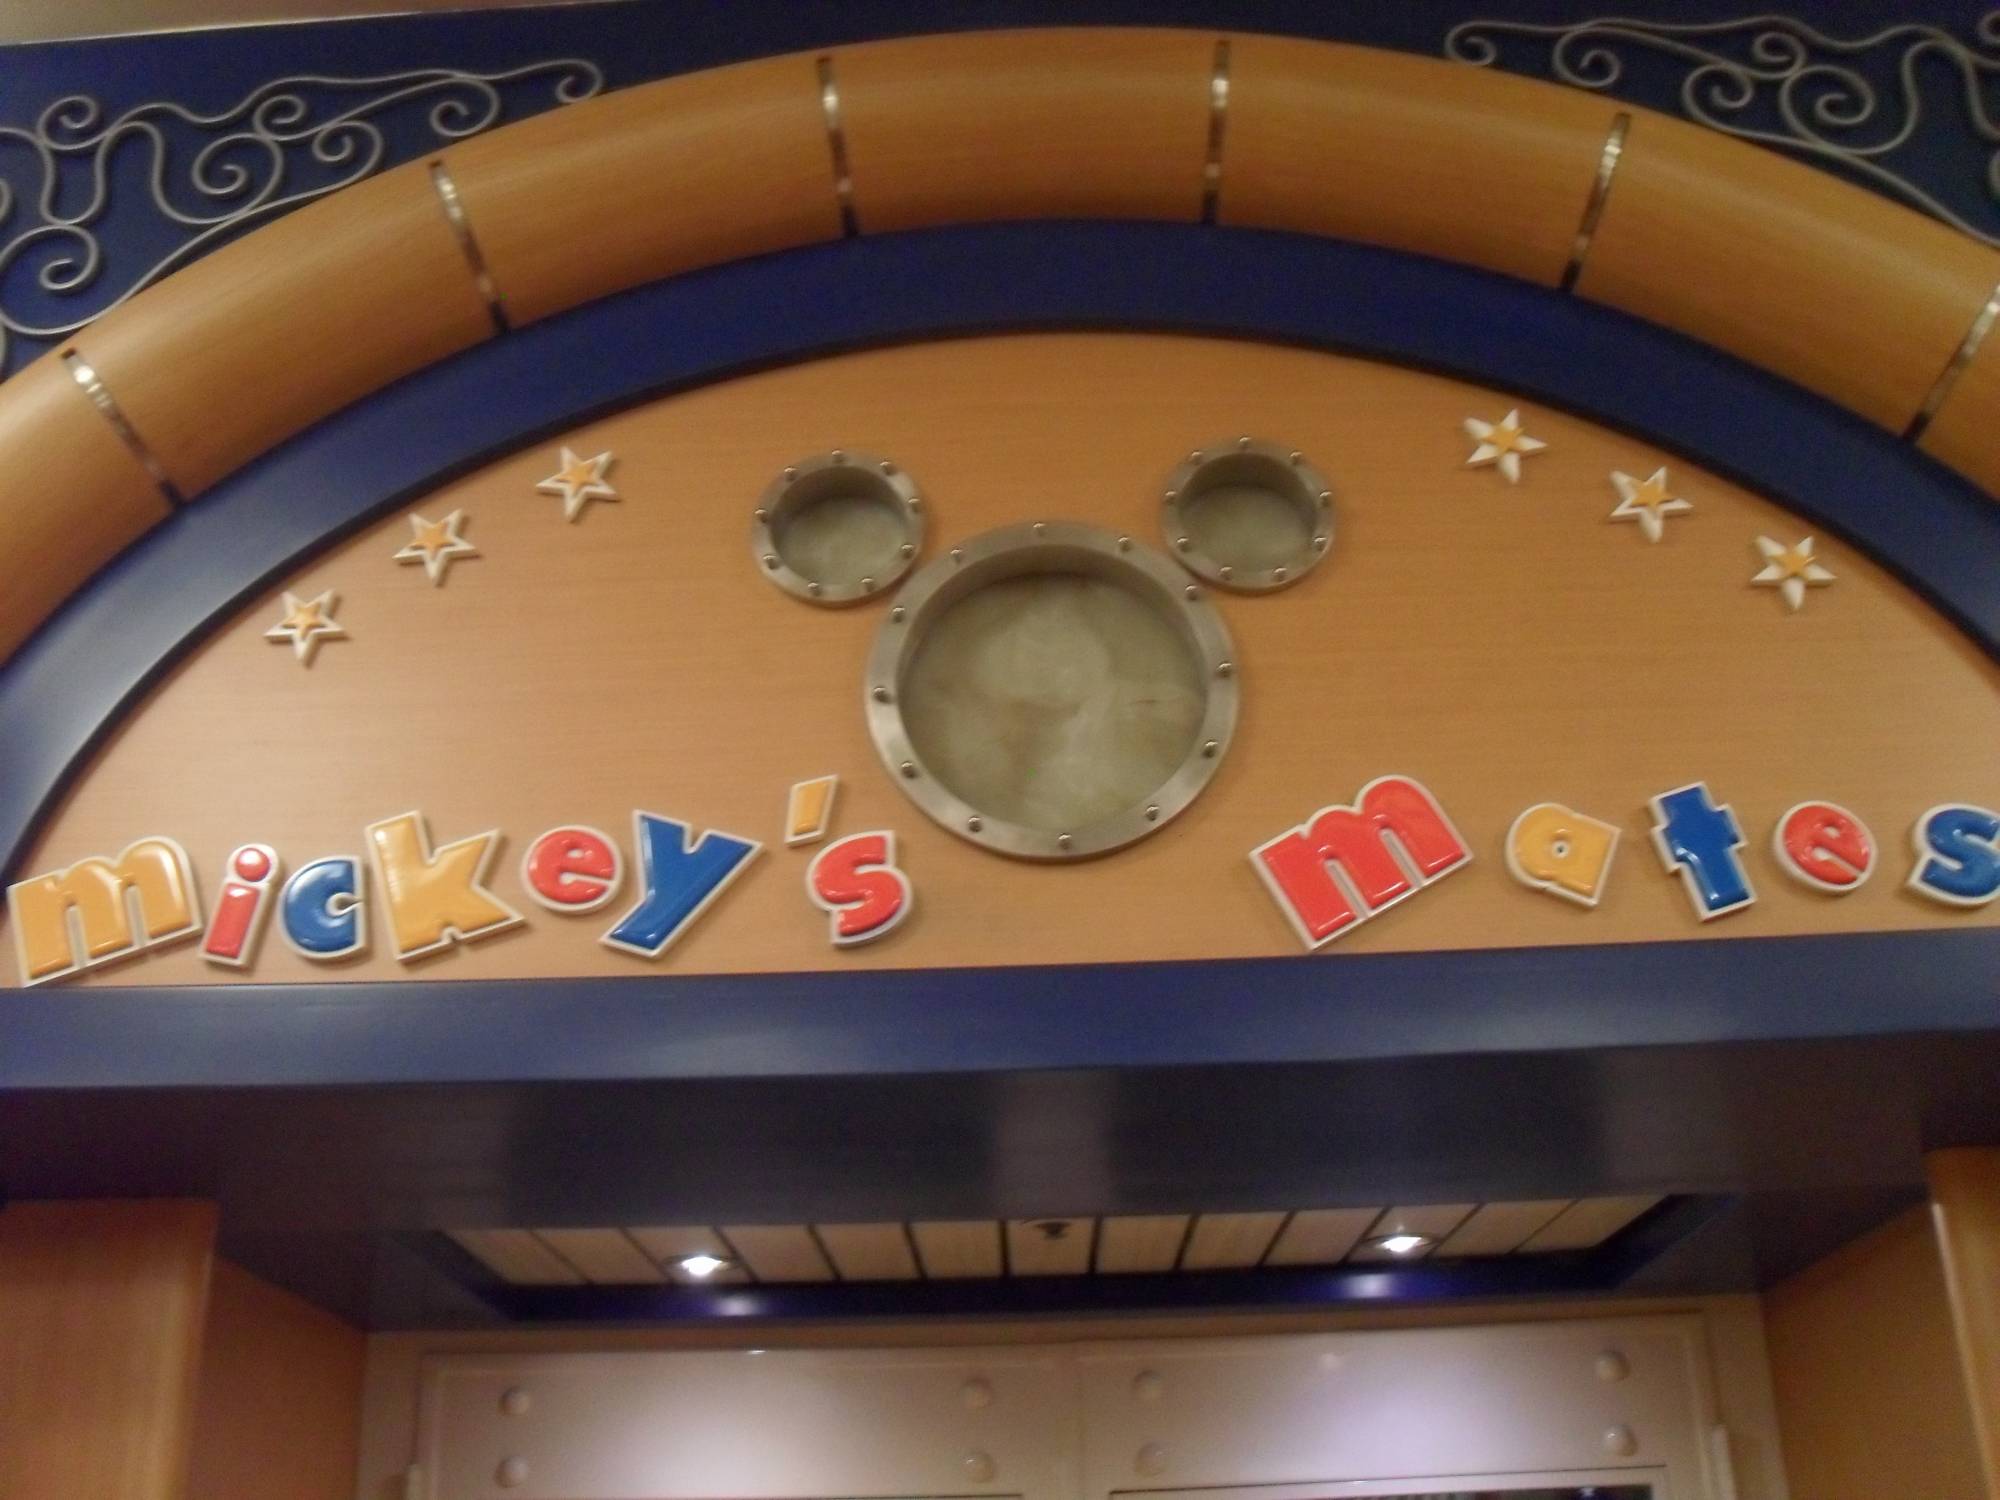 Mickey's Mates